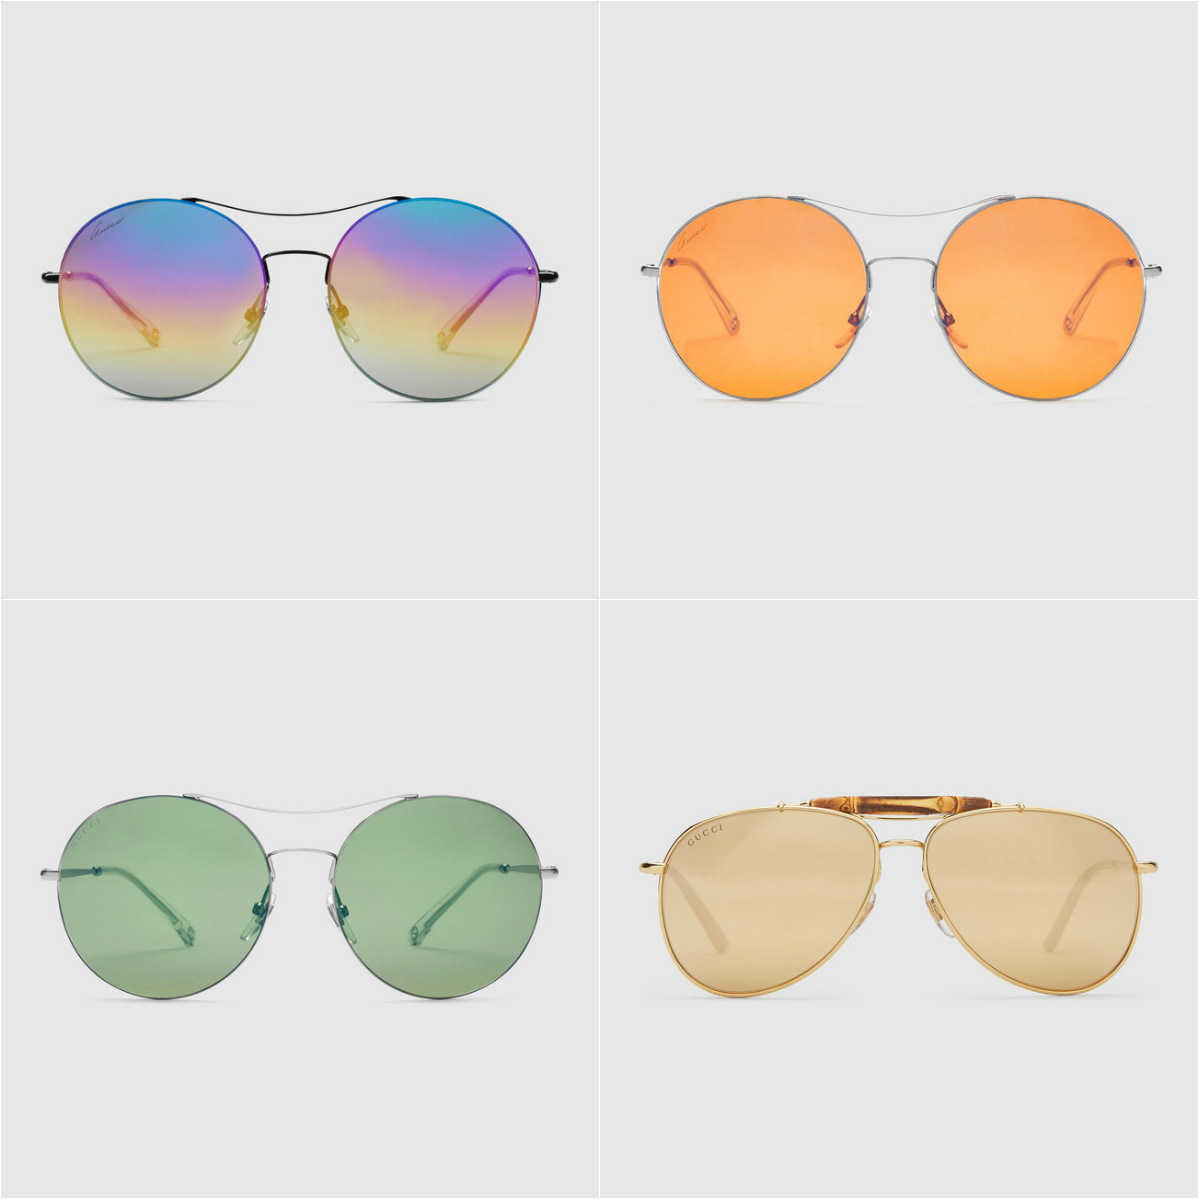 Модные мужские солнцезащитные очки весна-лето 2018 фото